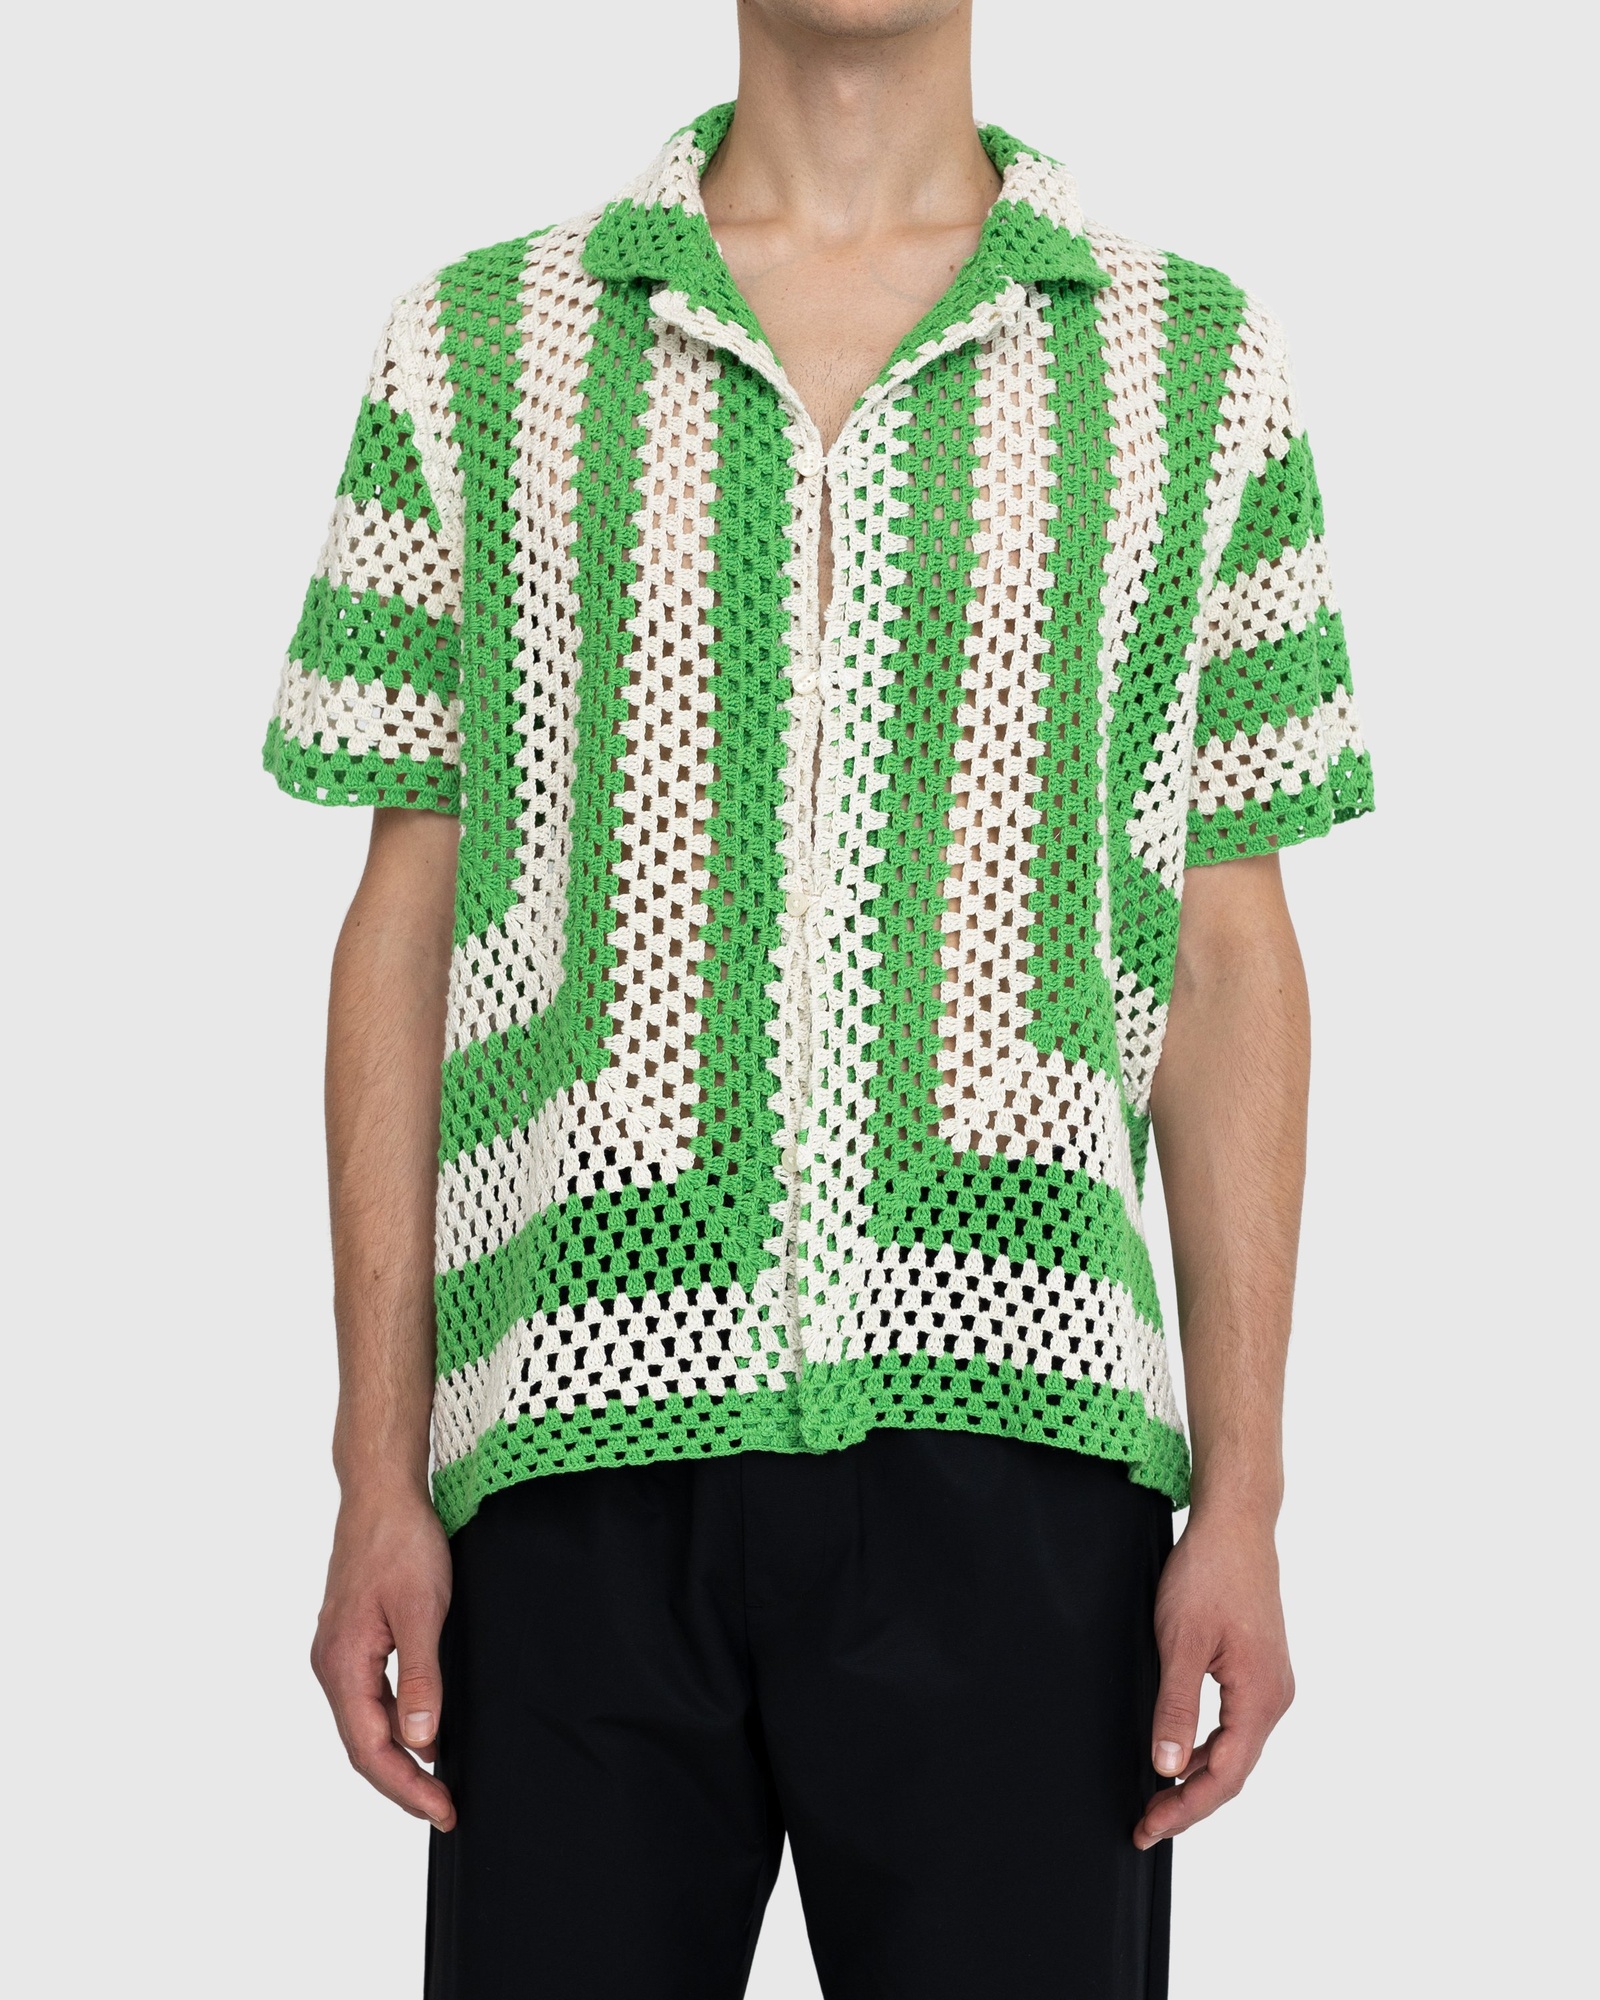 Bode – Crochet Shirt Green | Highsnobiety Shop